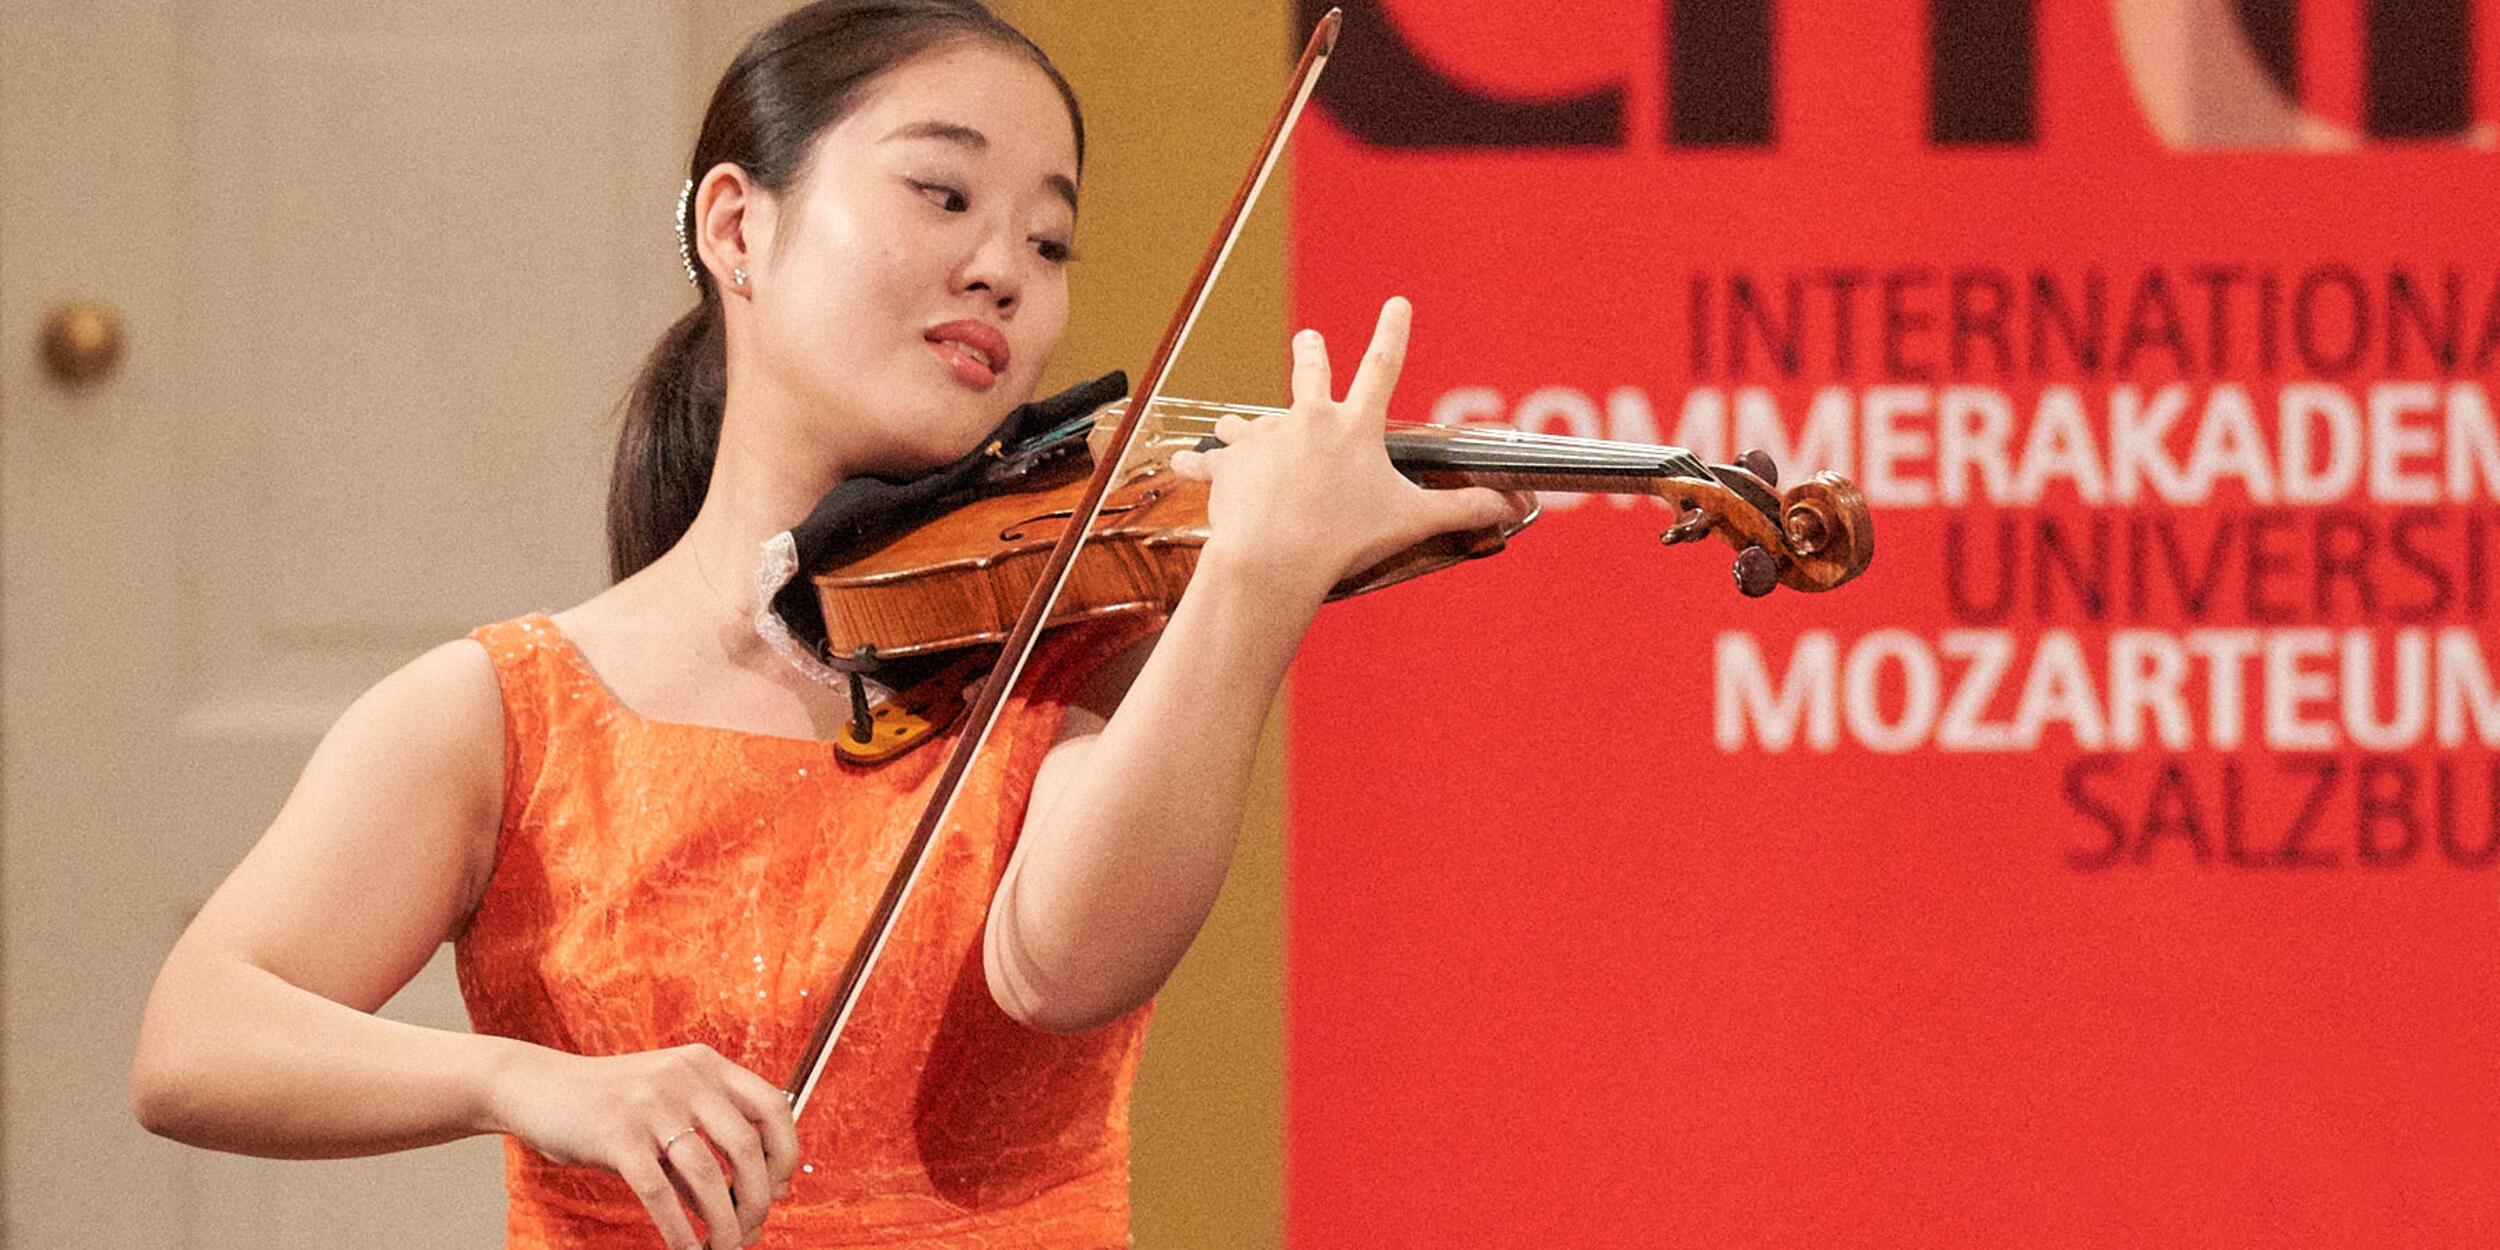 Asiatische Frau in orangem Kleid spielt Violine, roter Hintergrund | © Christian Schneider